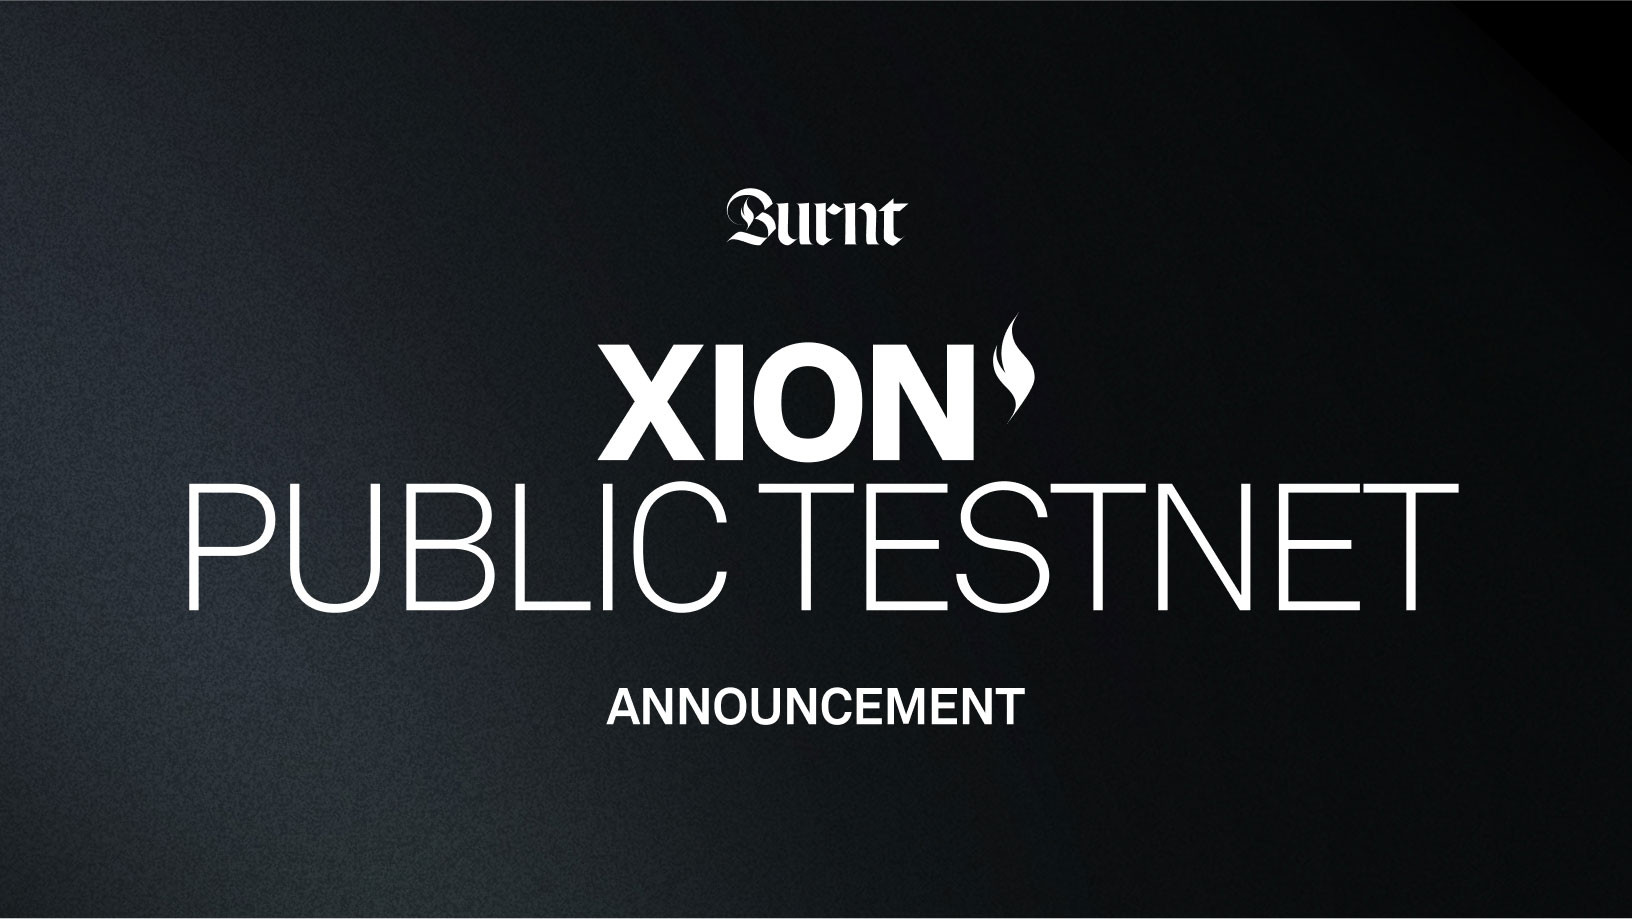 Xion Public Testnet Announcement.